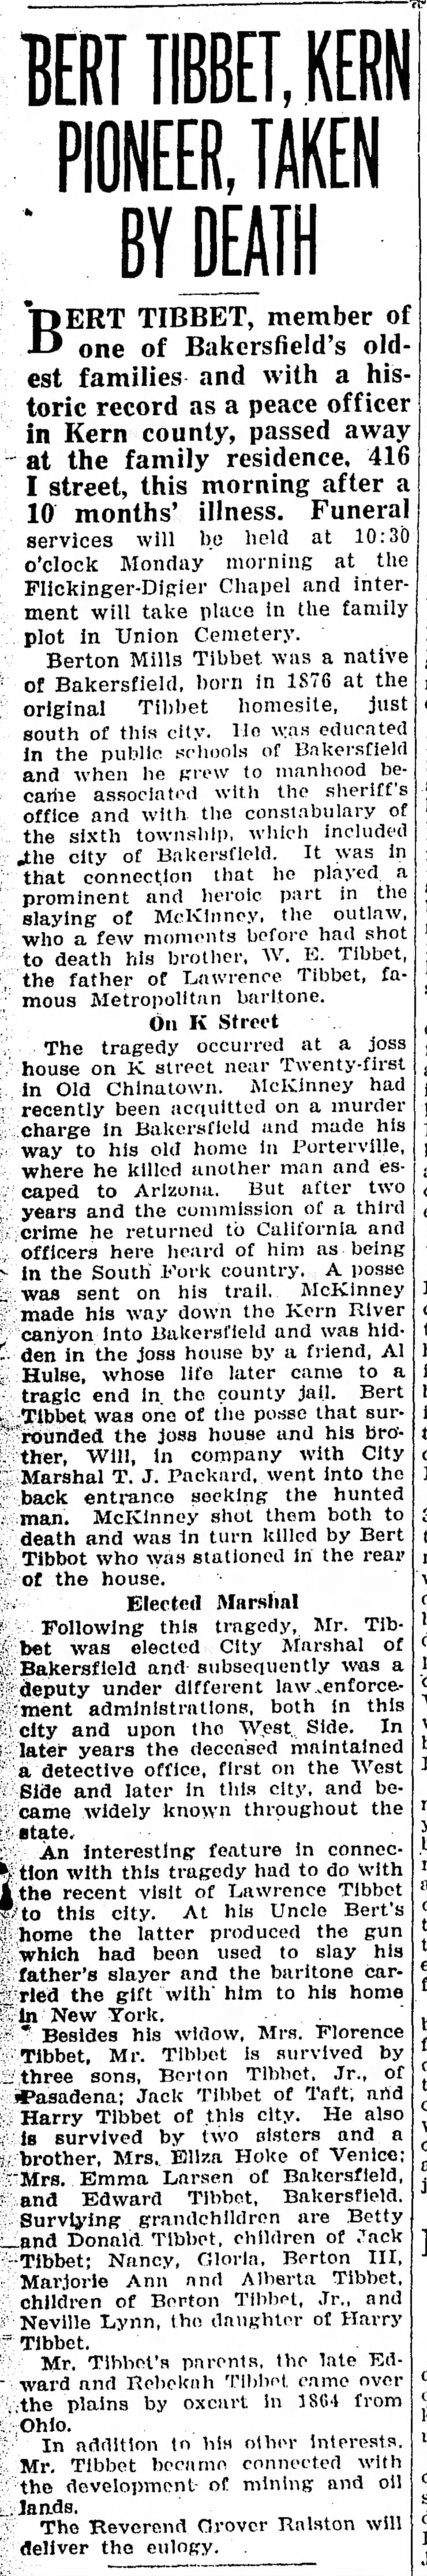 Bert Tibbet Obituary
Bakersfield Californian
9 Jun 1939, p. 1 c. 1